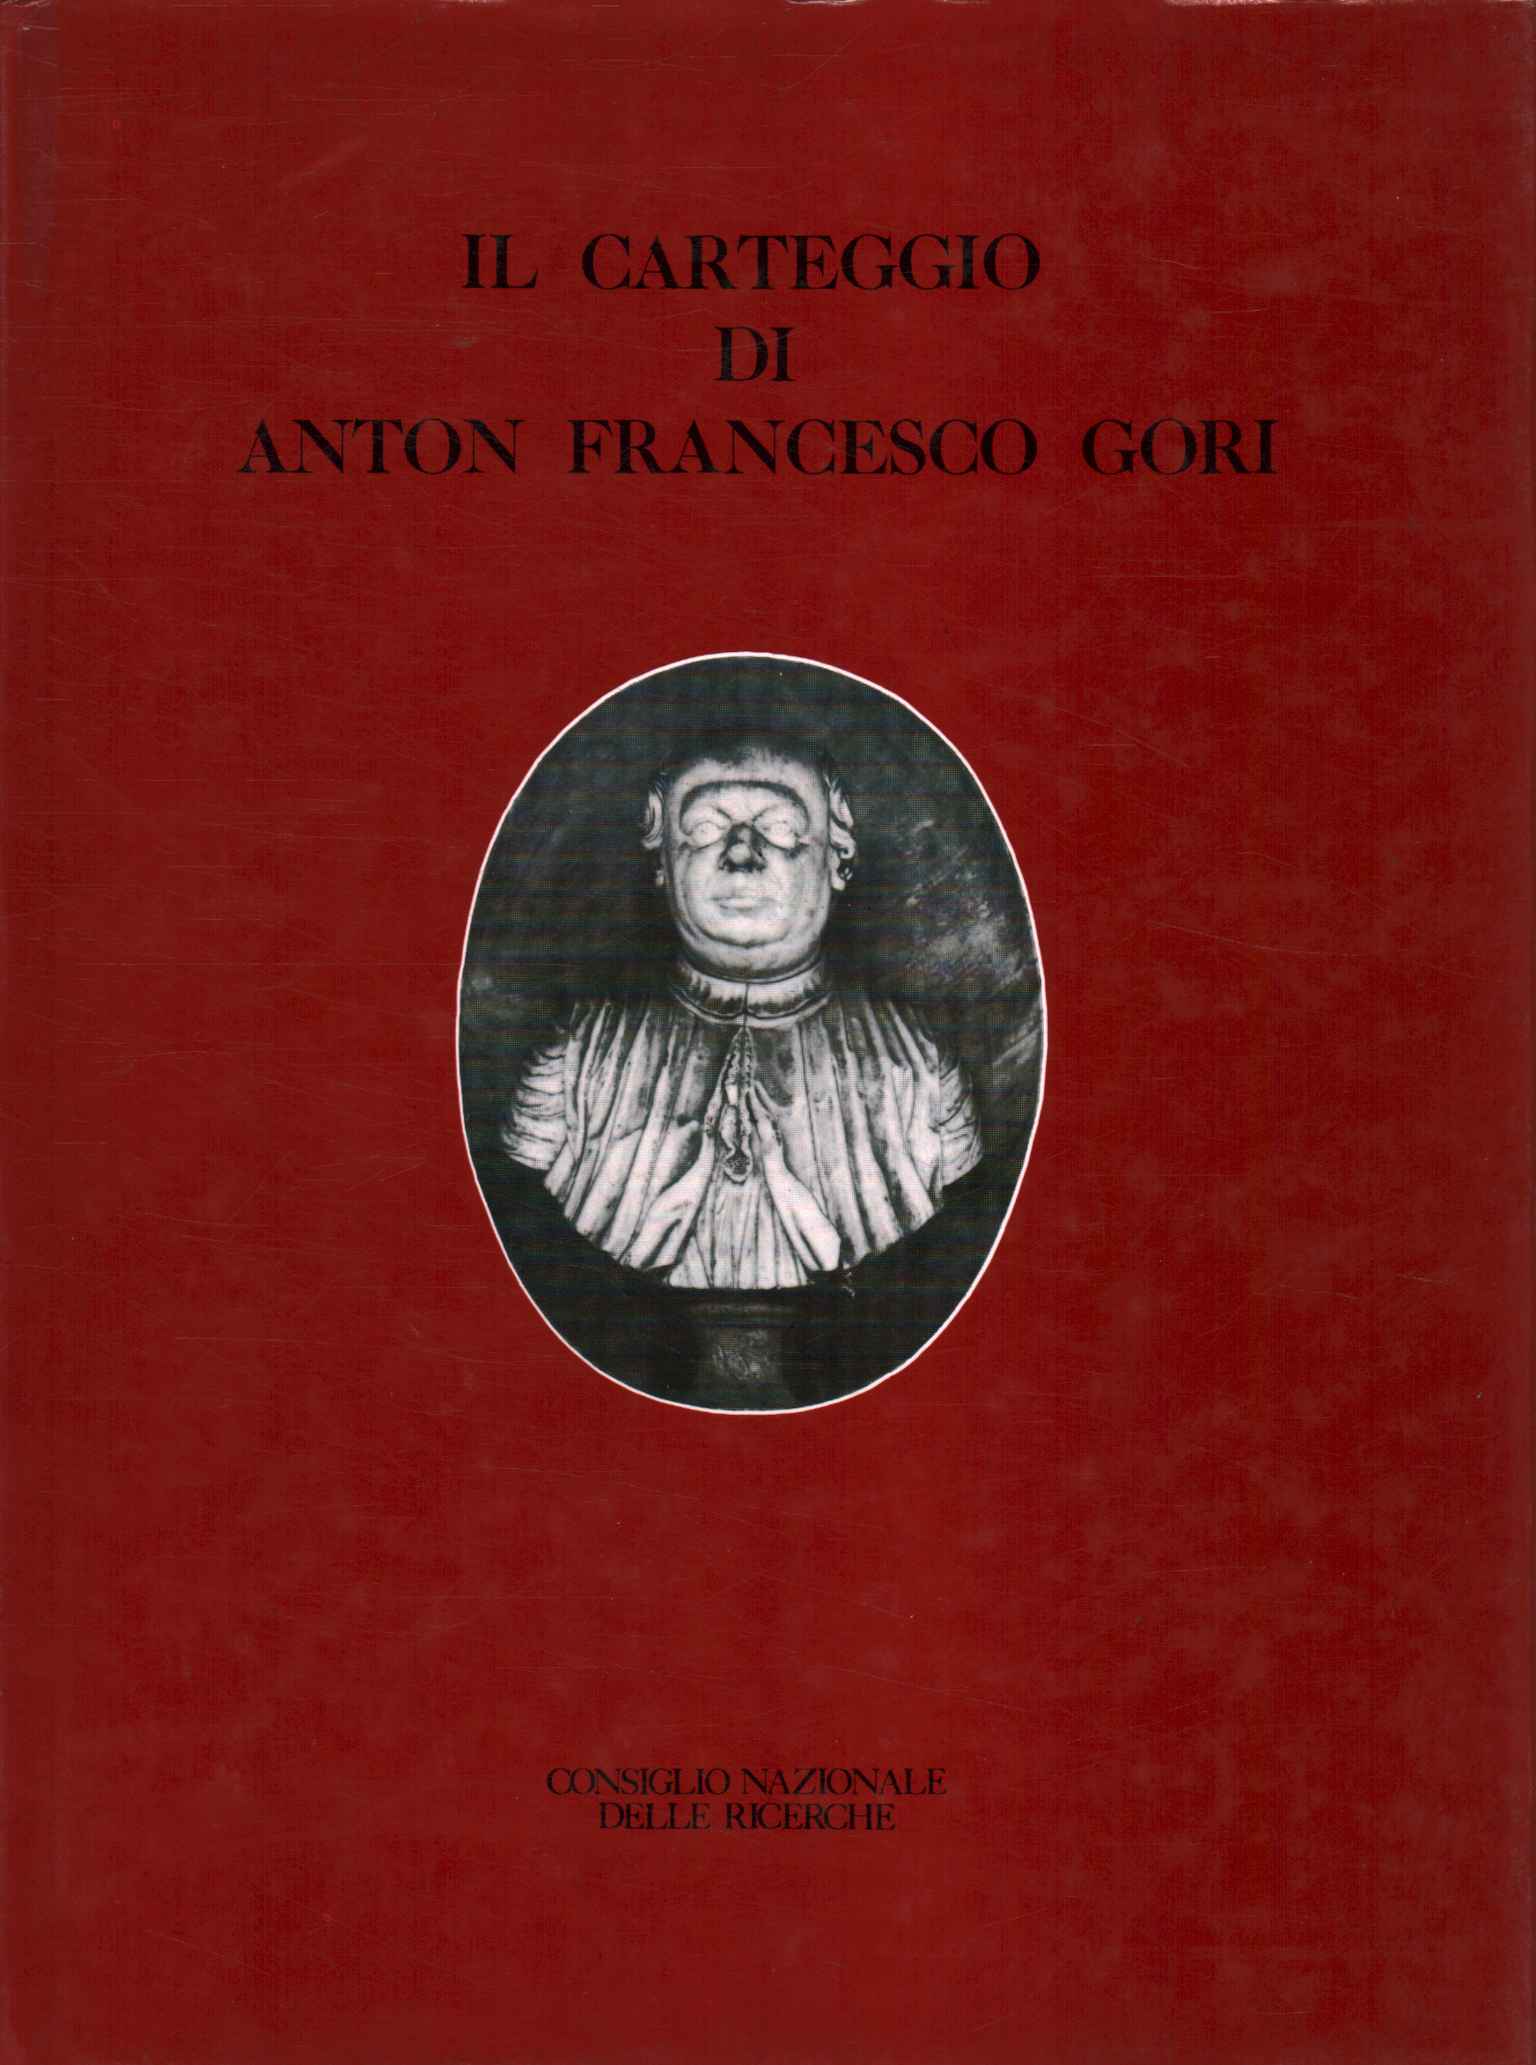 La correspondencia de Anton Francesco Gori